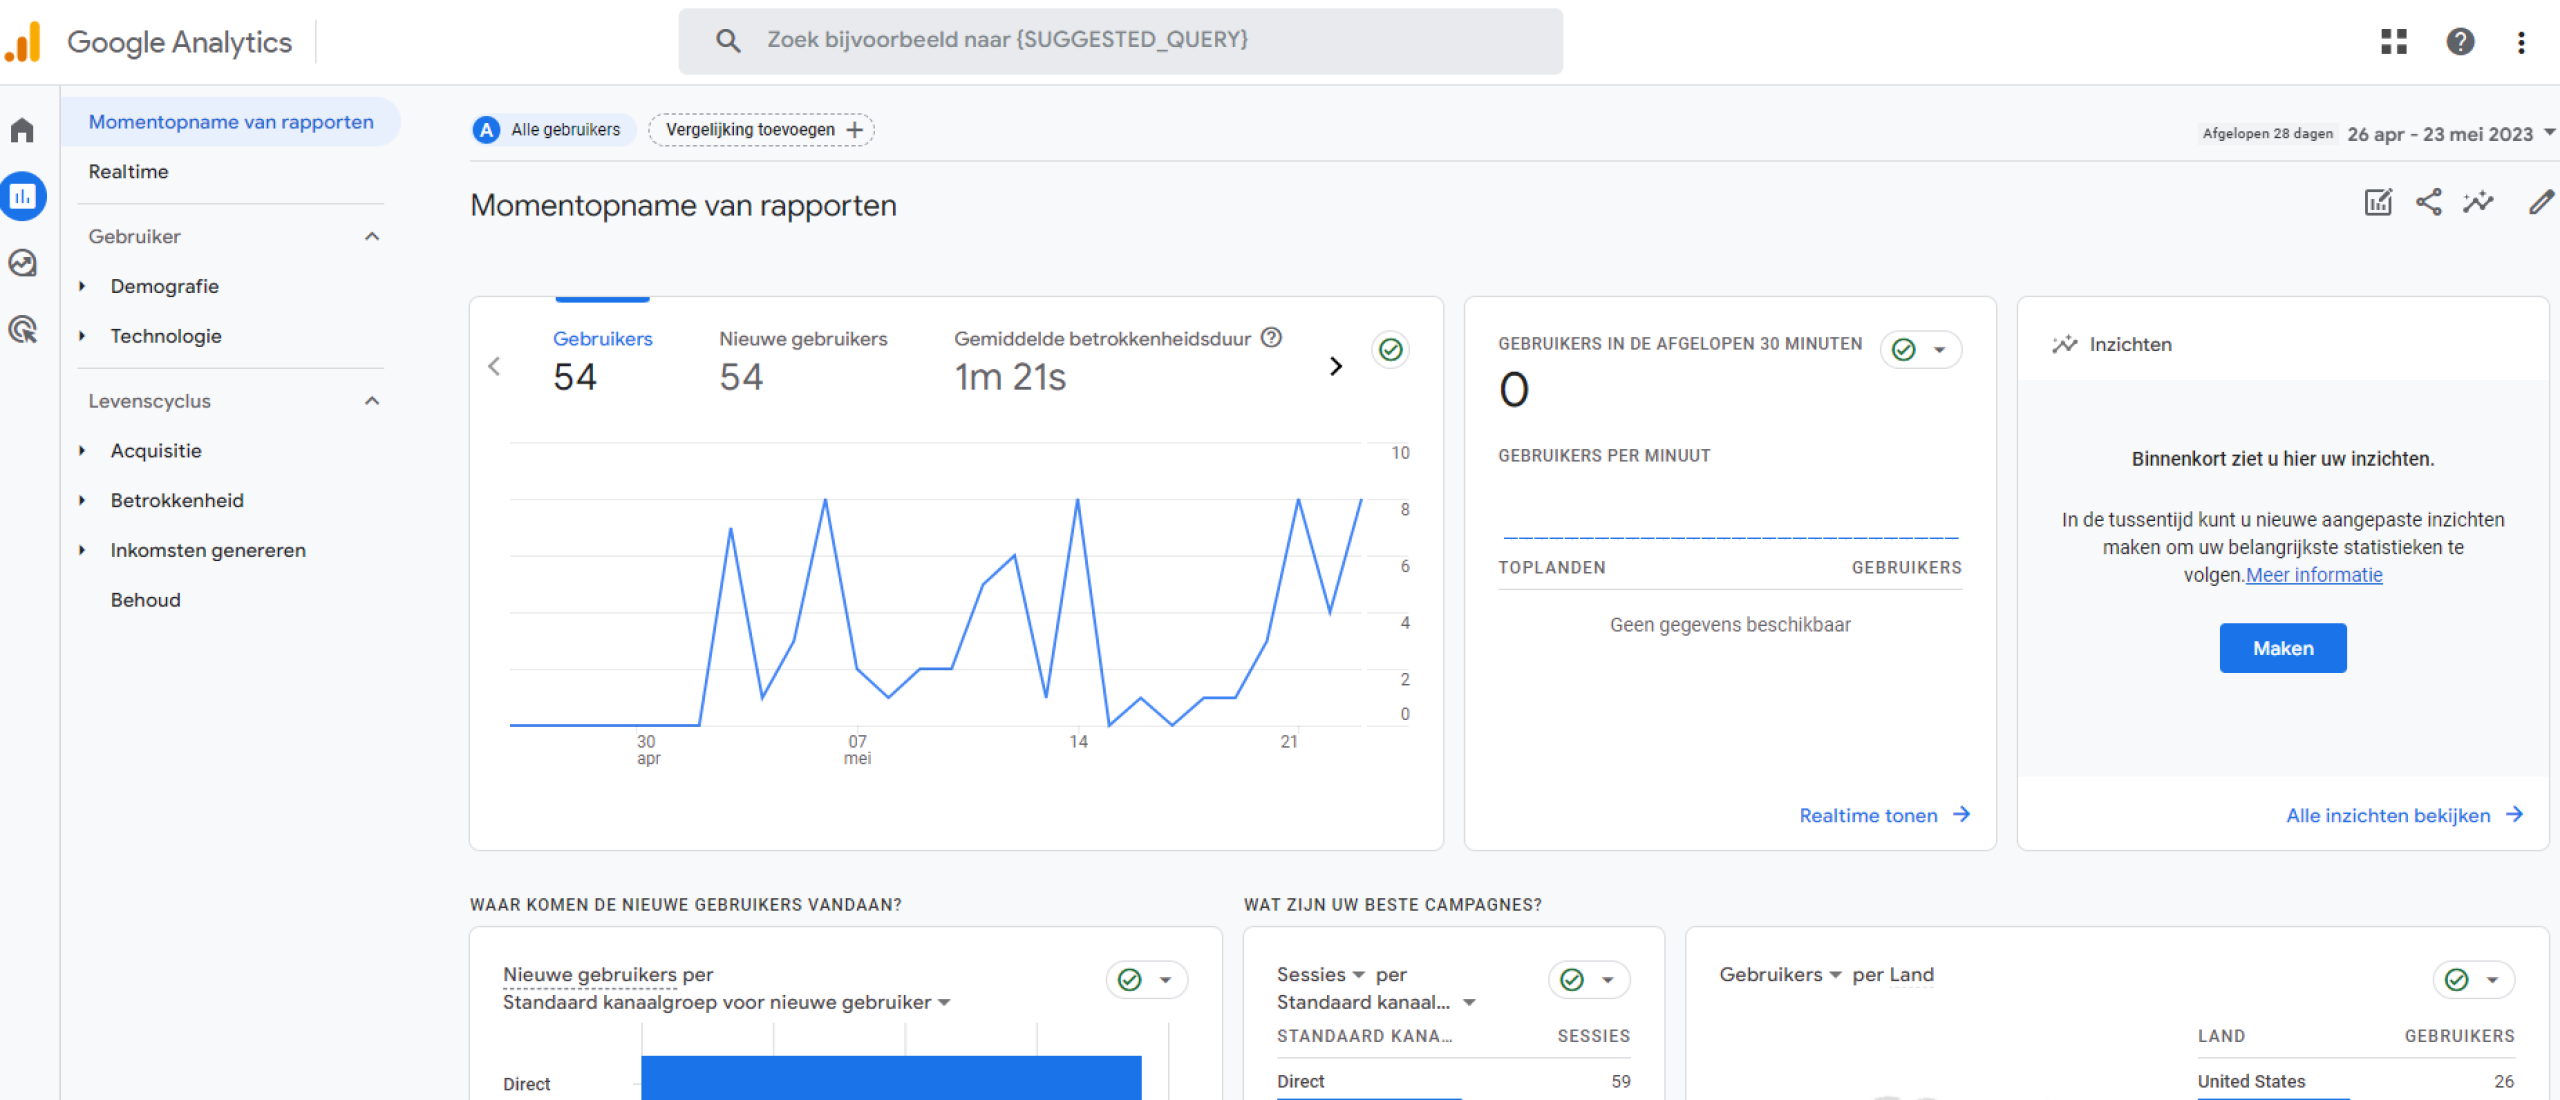 Google Analytics 4 en het Belang van Dashboards